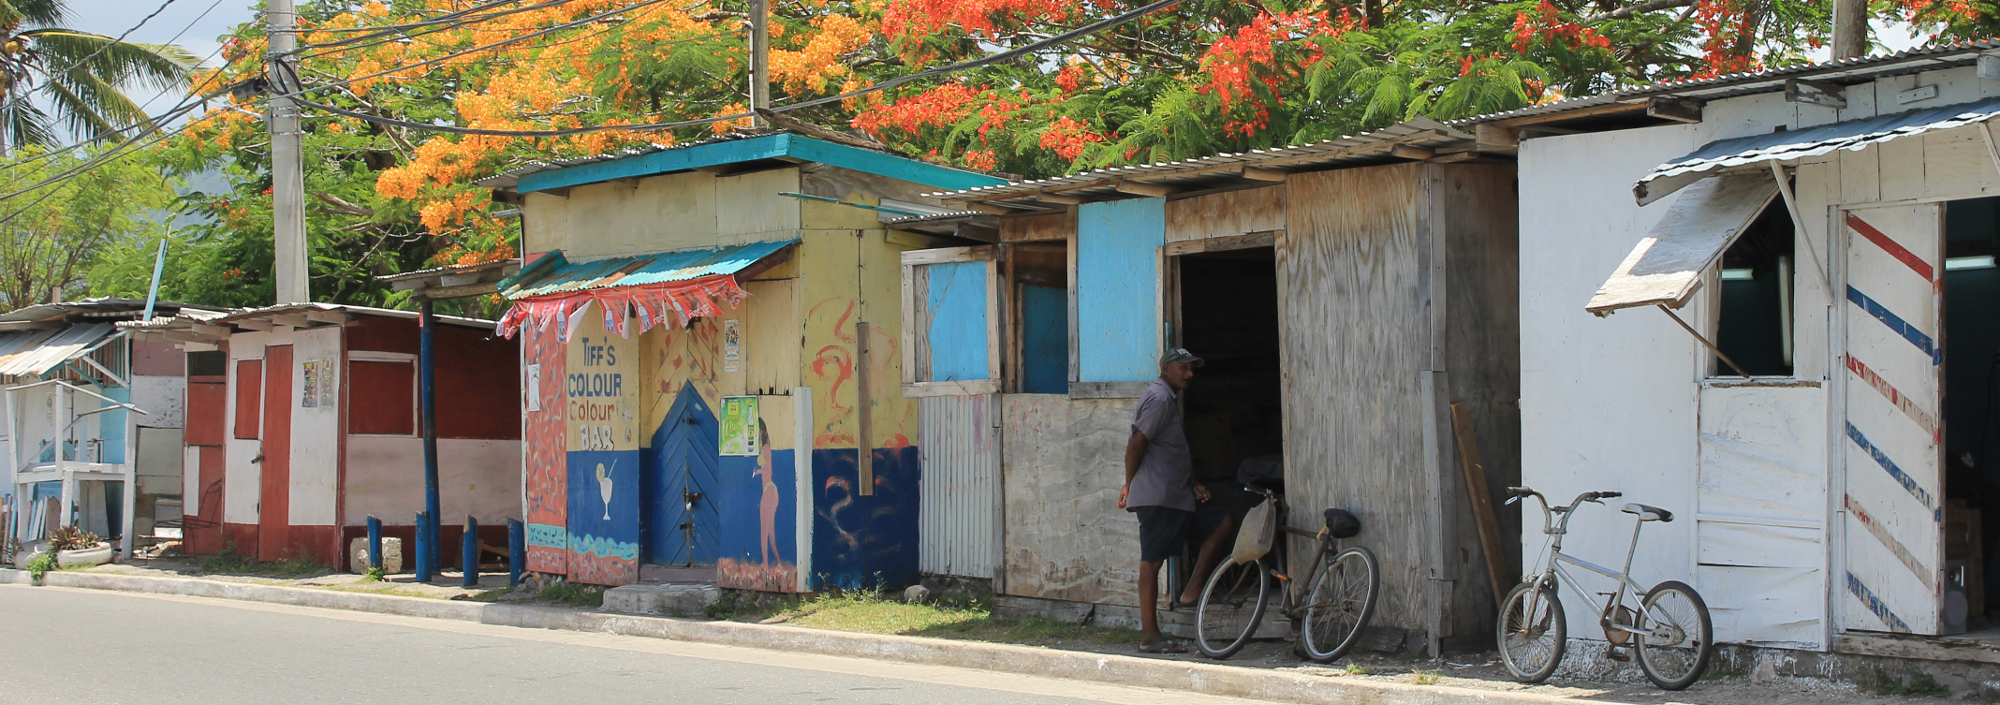 Auf einer Straße im Norden Jamaicas mit kleinen Hütten